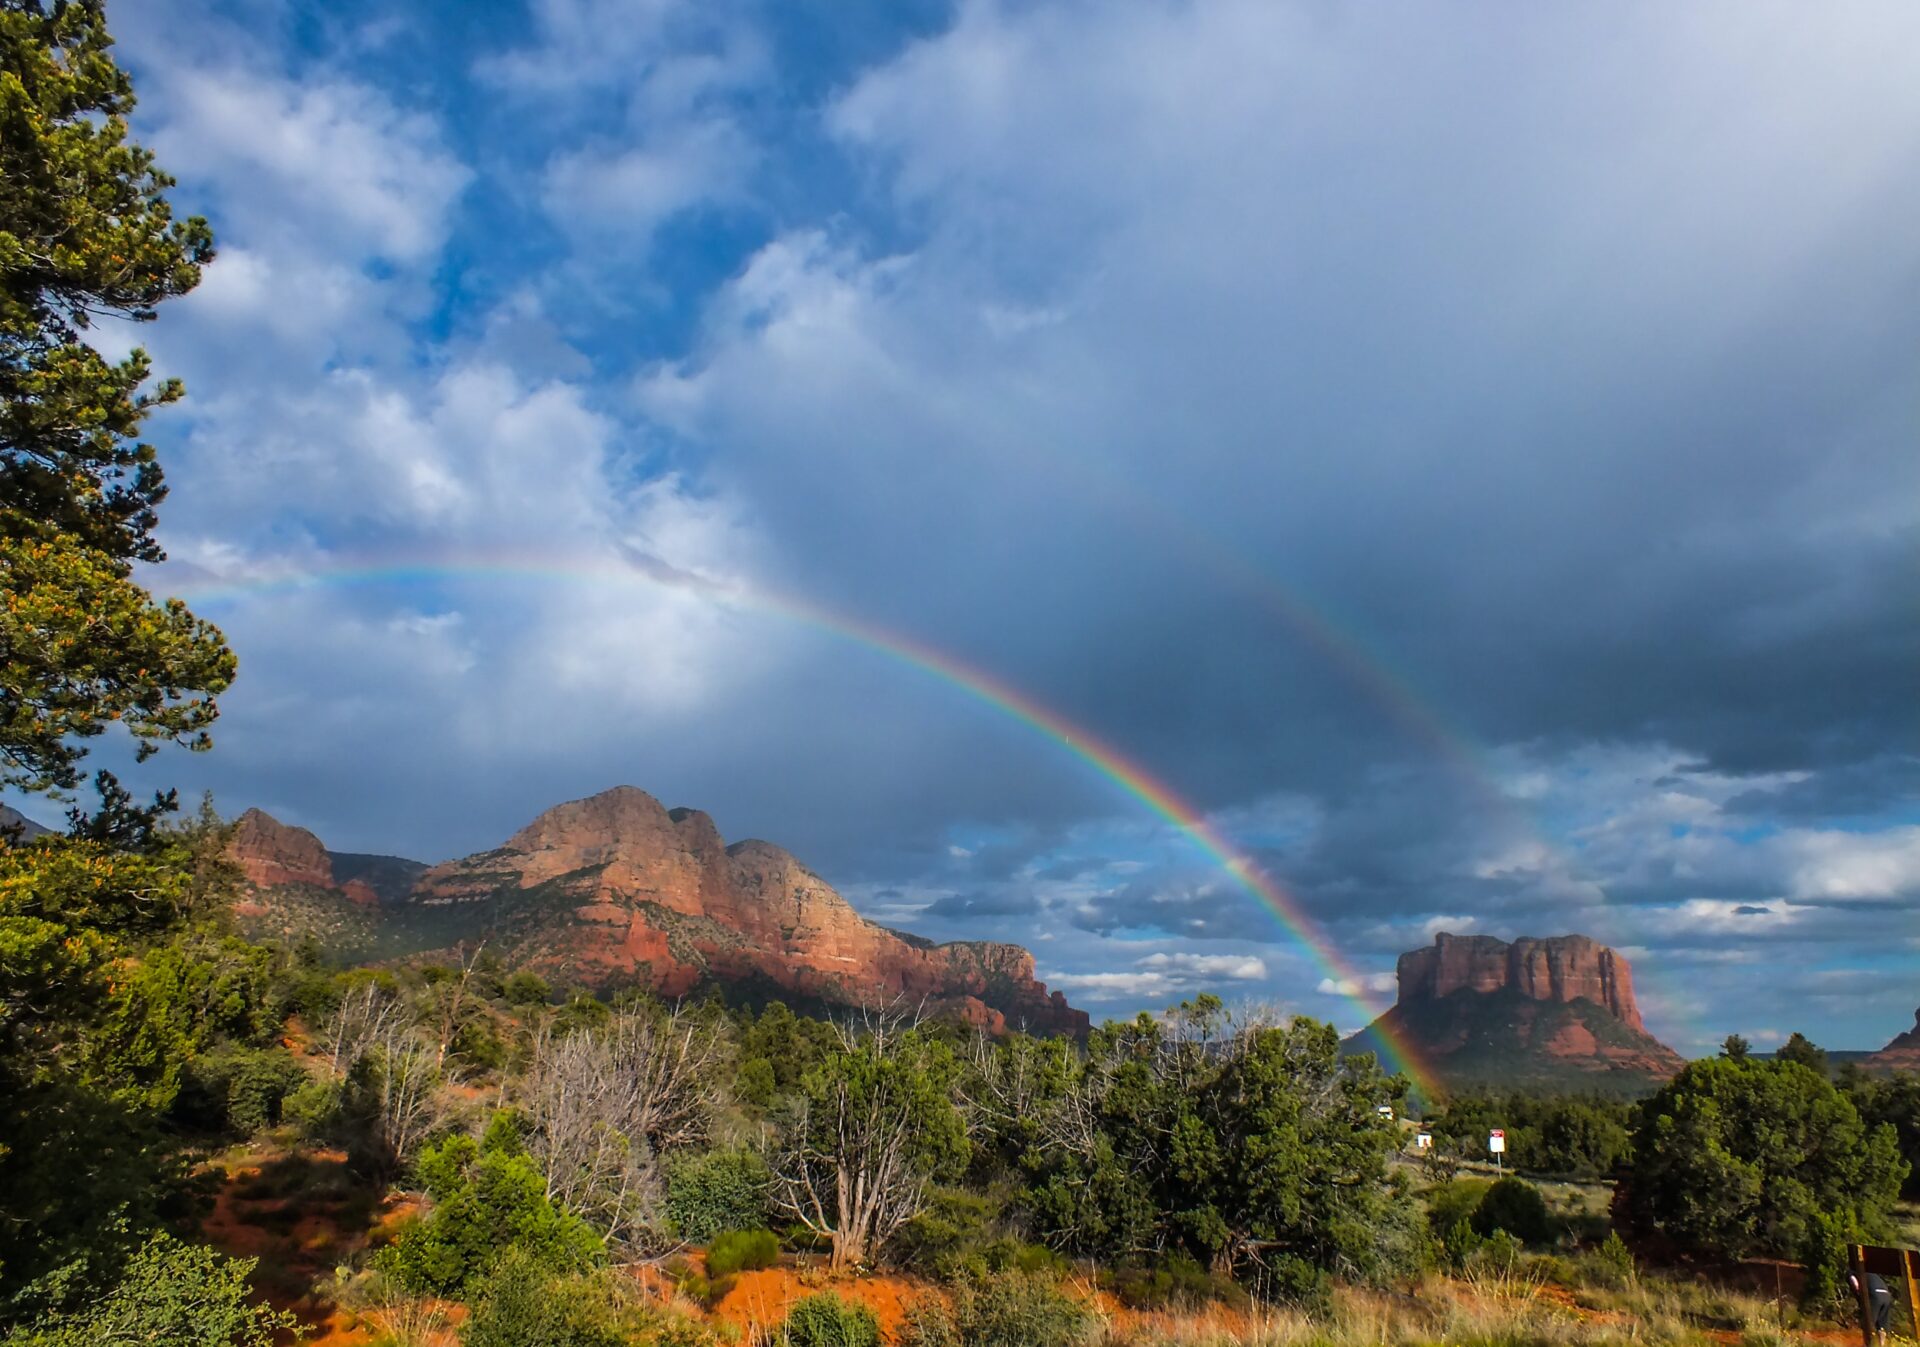 A rainbow over sedona, arizona.